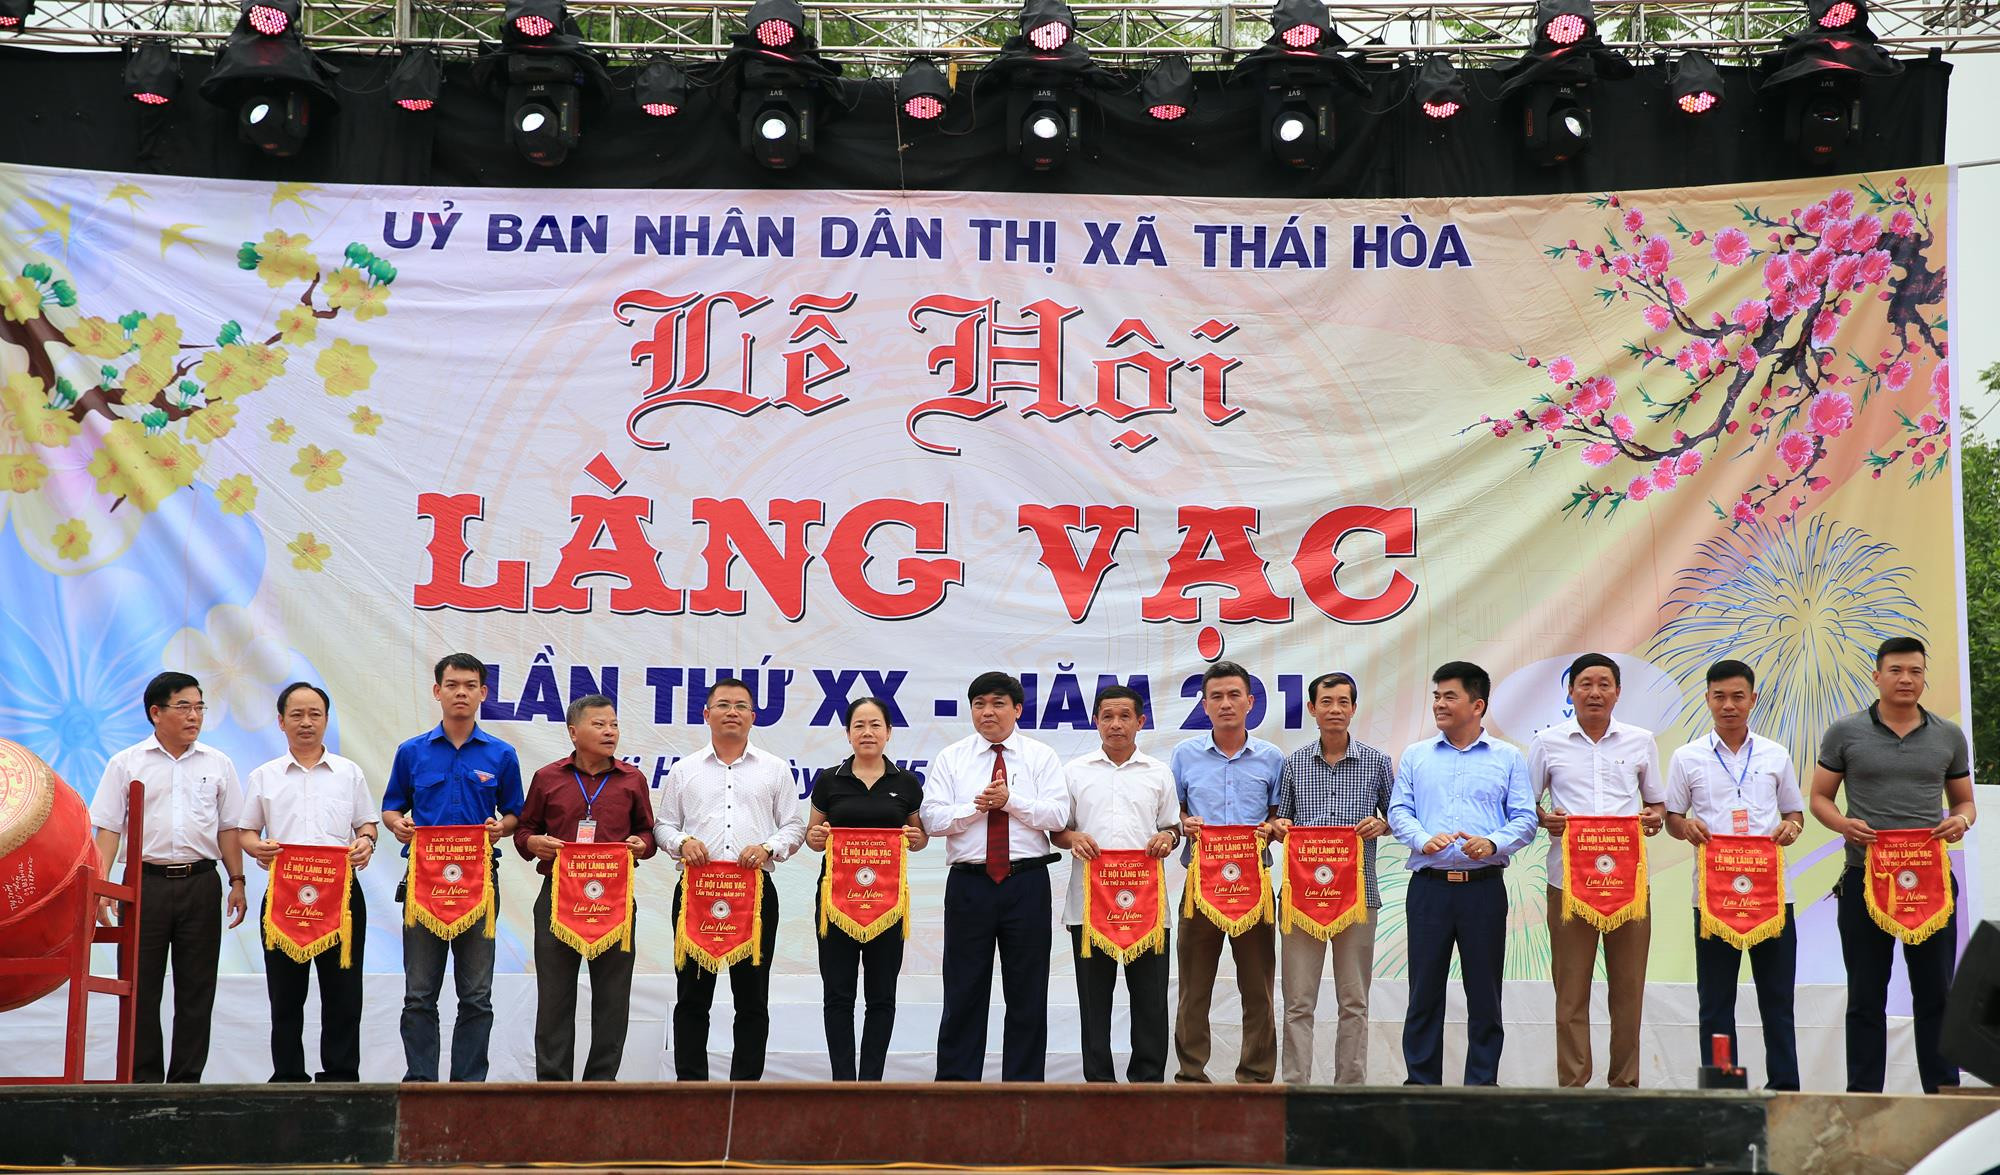 Đại diện lãnh đạo huyện trao cờ lưu niệm cho các đơn vị tham gia lễ hội Làng Vạc năm 2019.